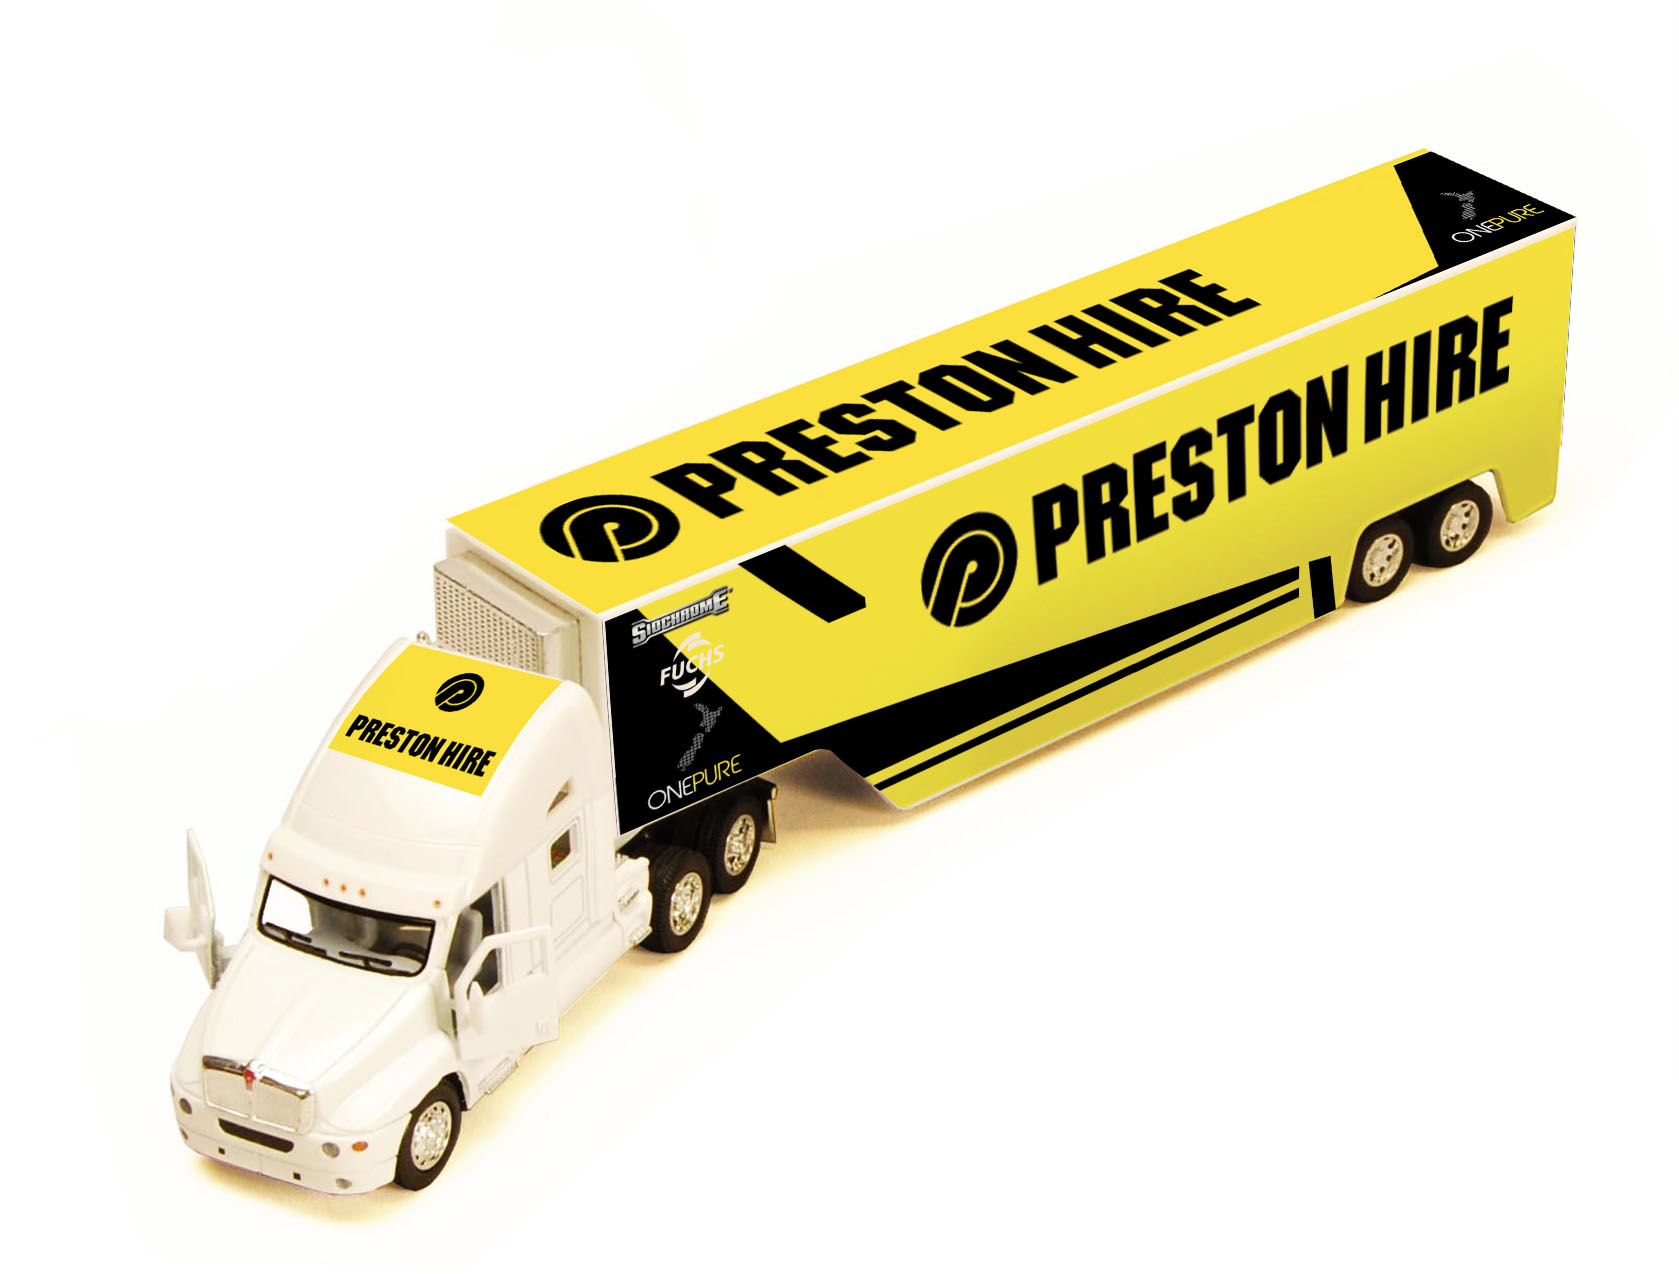 Preston hire Racing